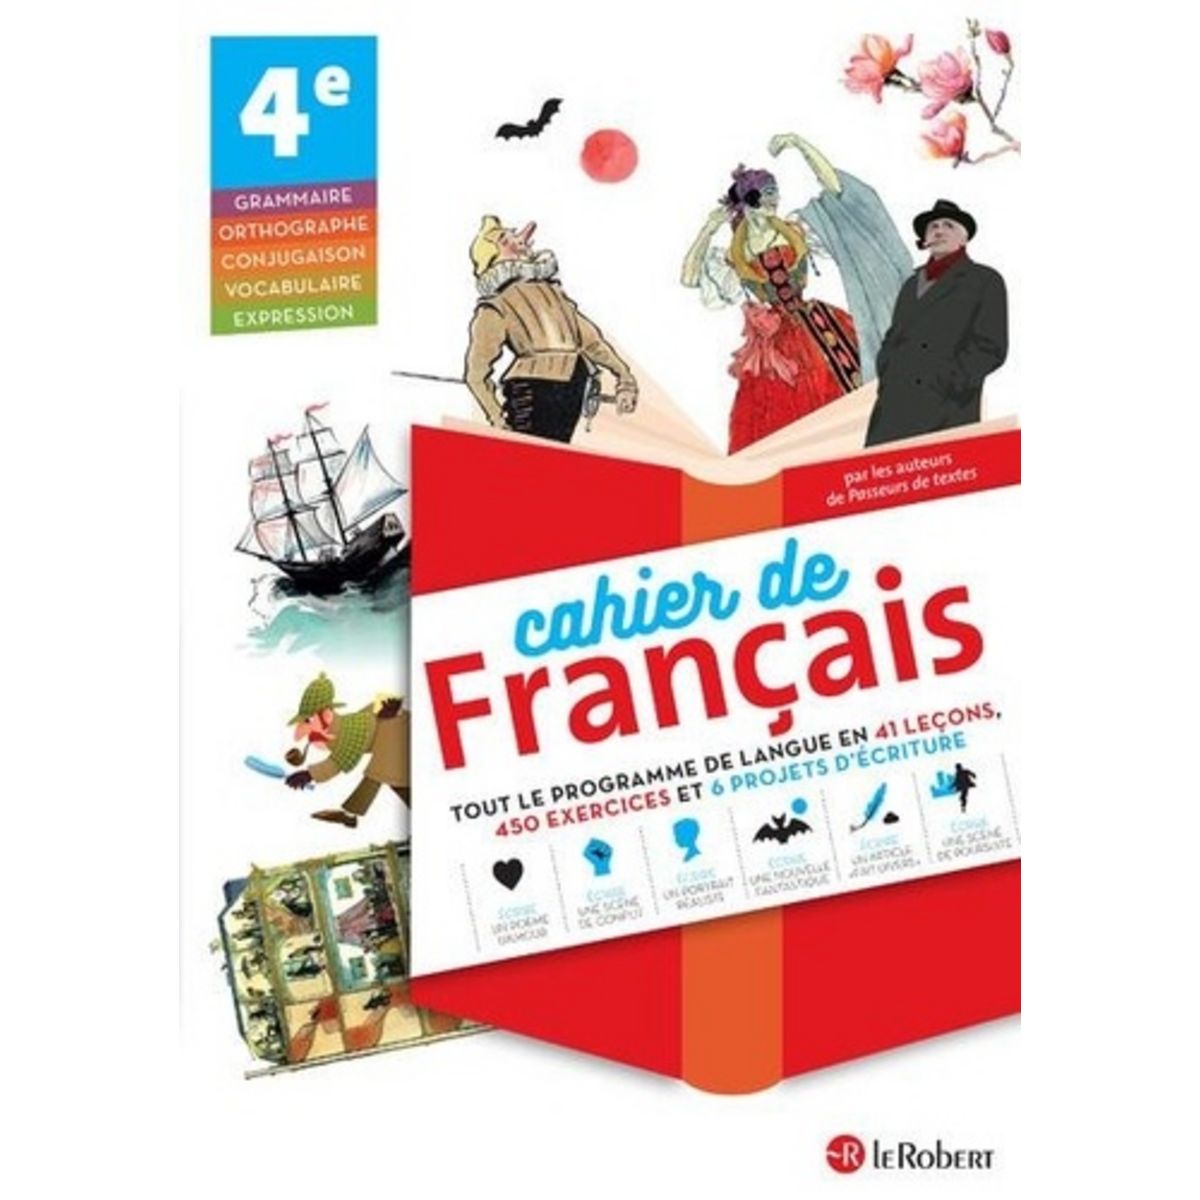 Image Pour Cahier De Francais CAHIER DE FRANCAIS 4E, Abensour Corinne pas cher - Auchan.fr